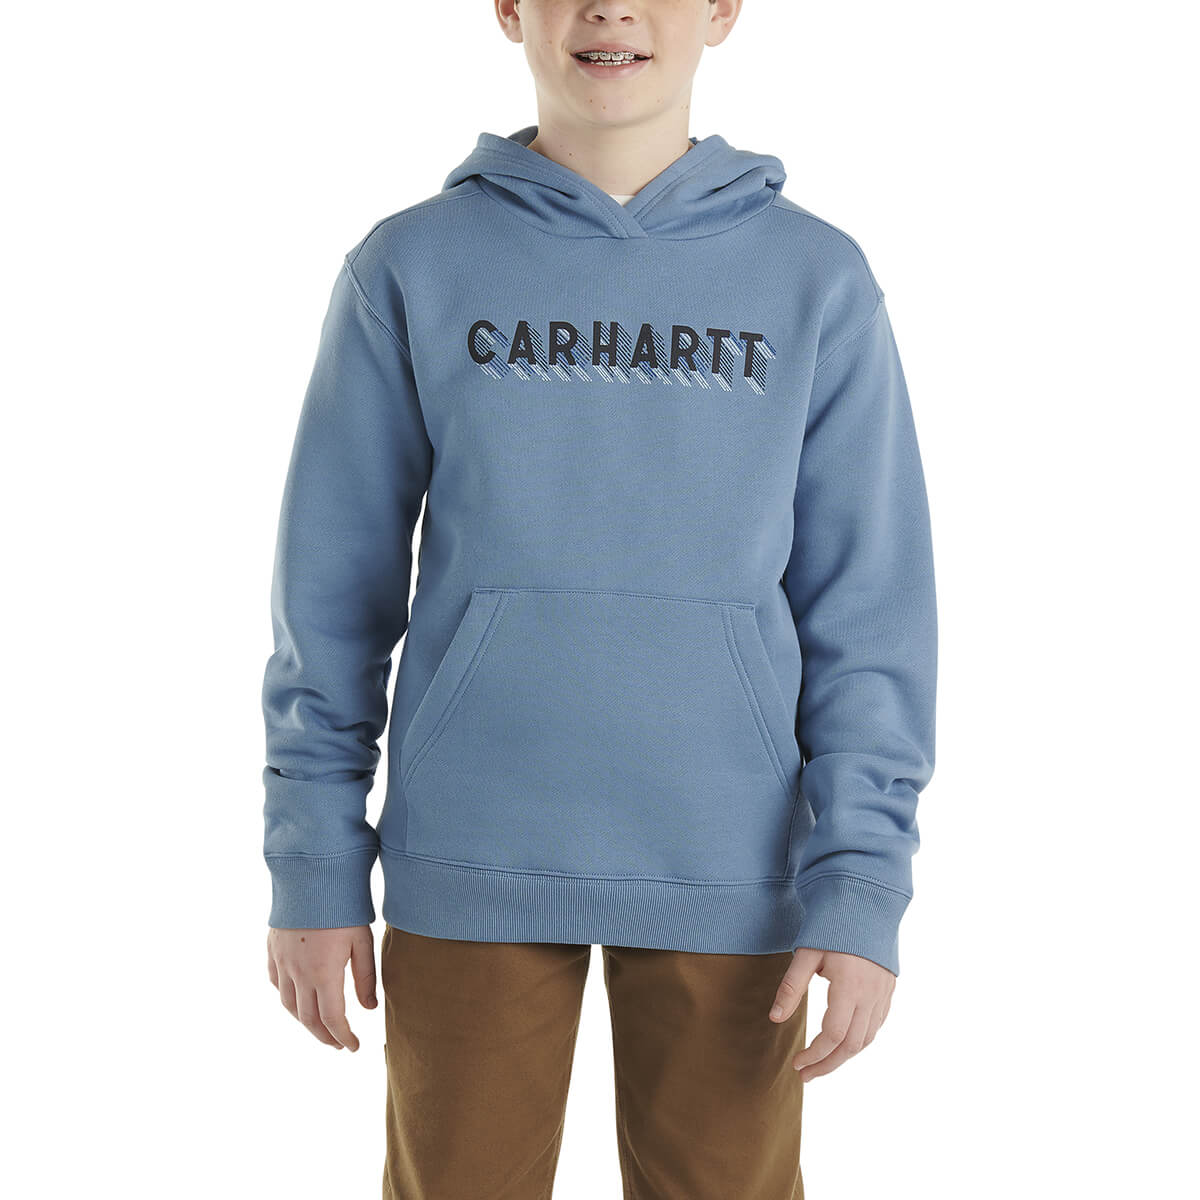 Carhartt Boy's Long Sleeve Graphic Sweatshirt CA6467 - Quiet Harbor